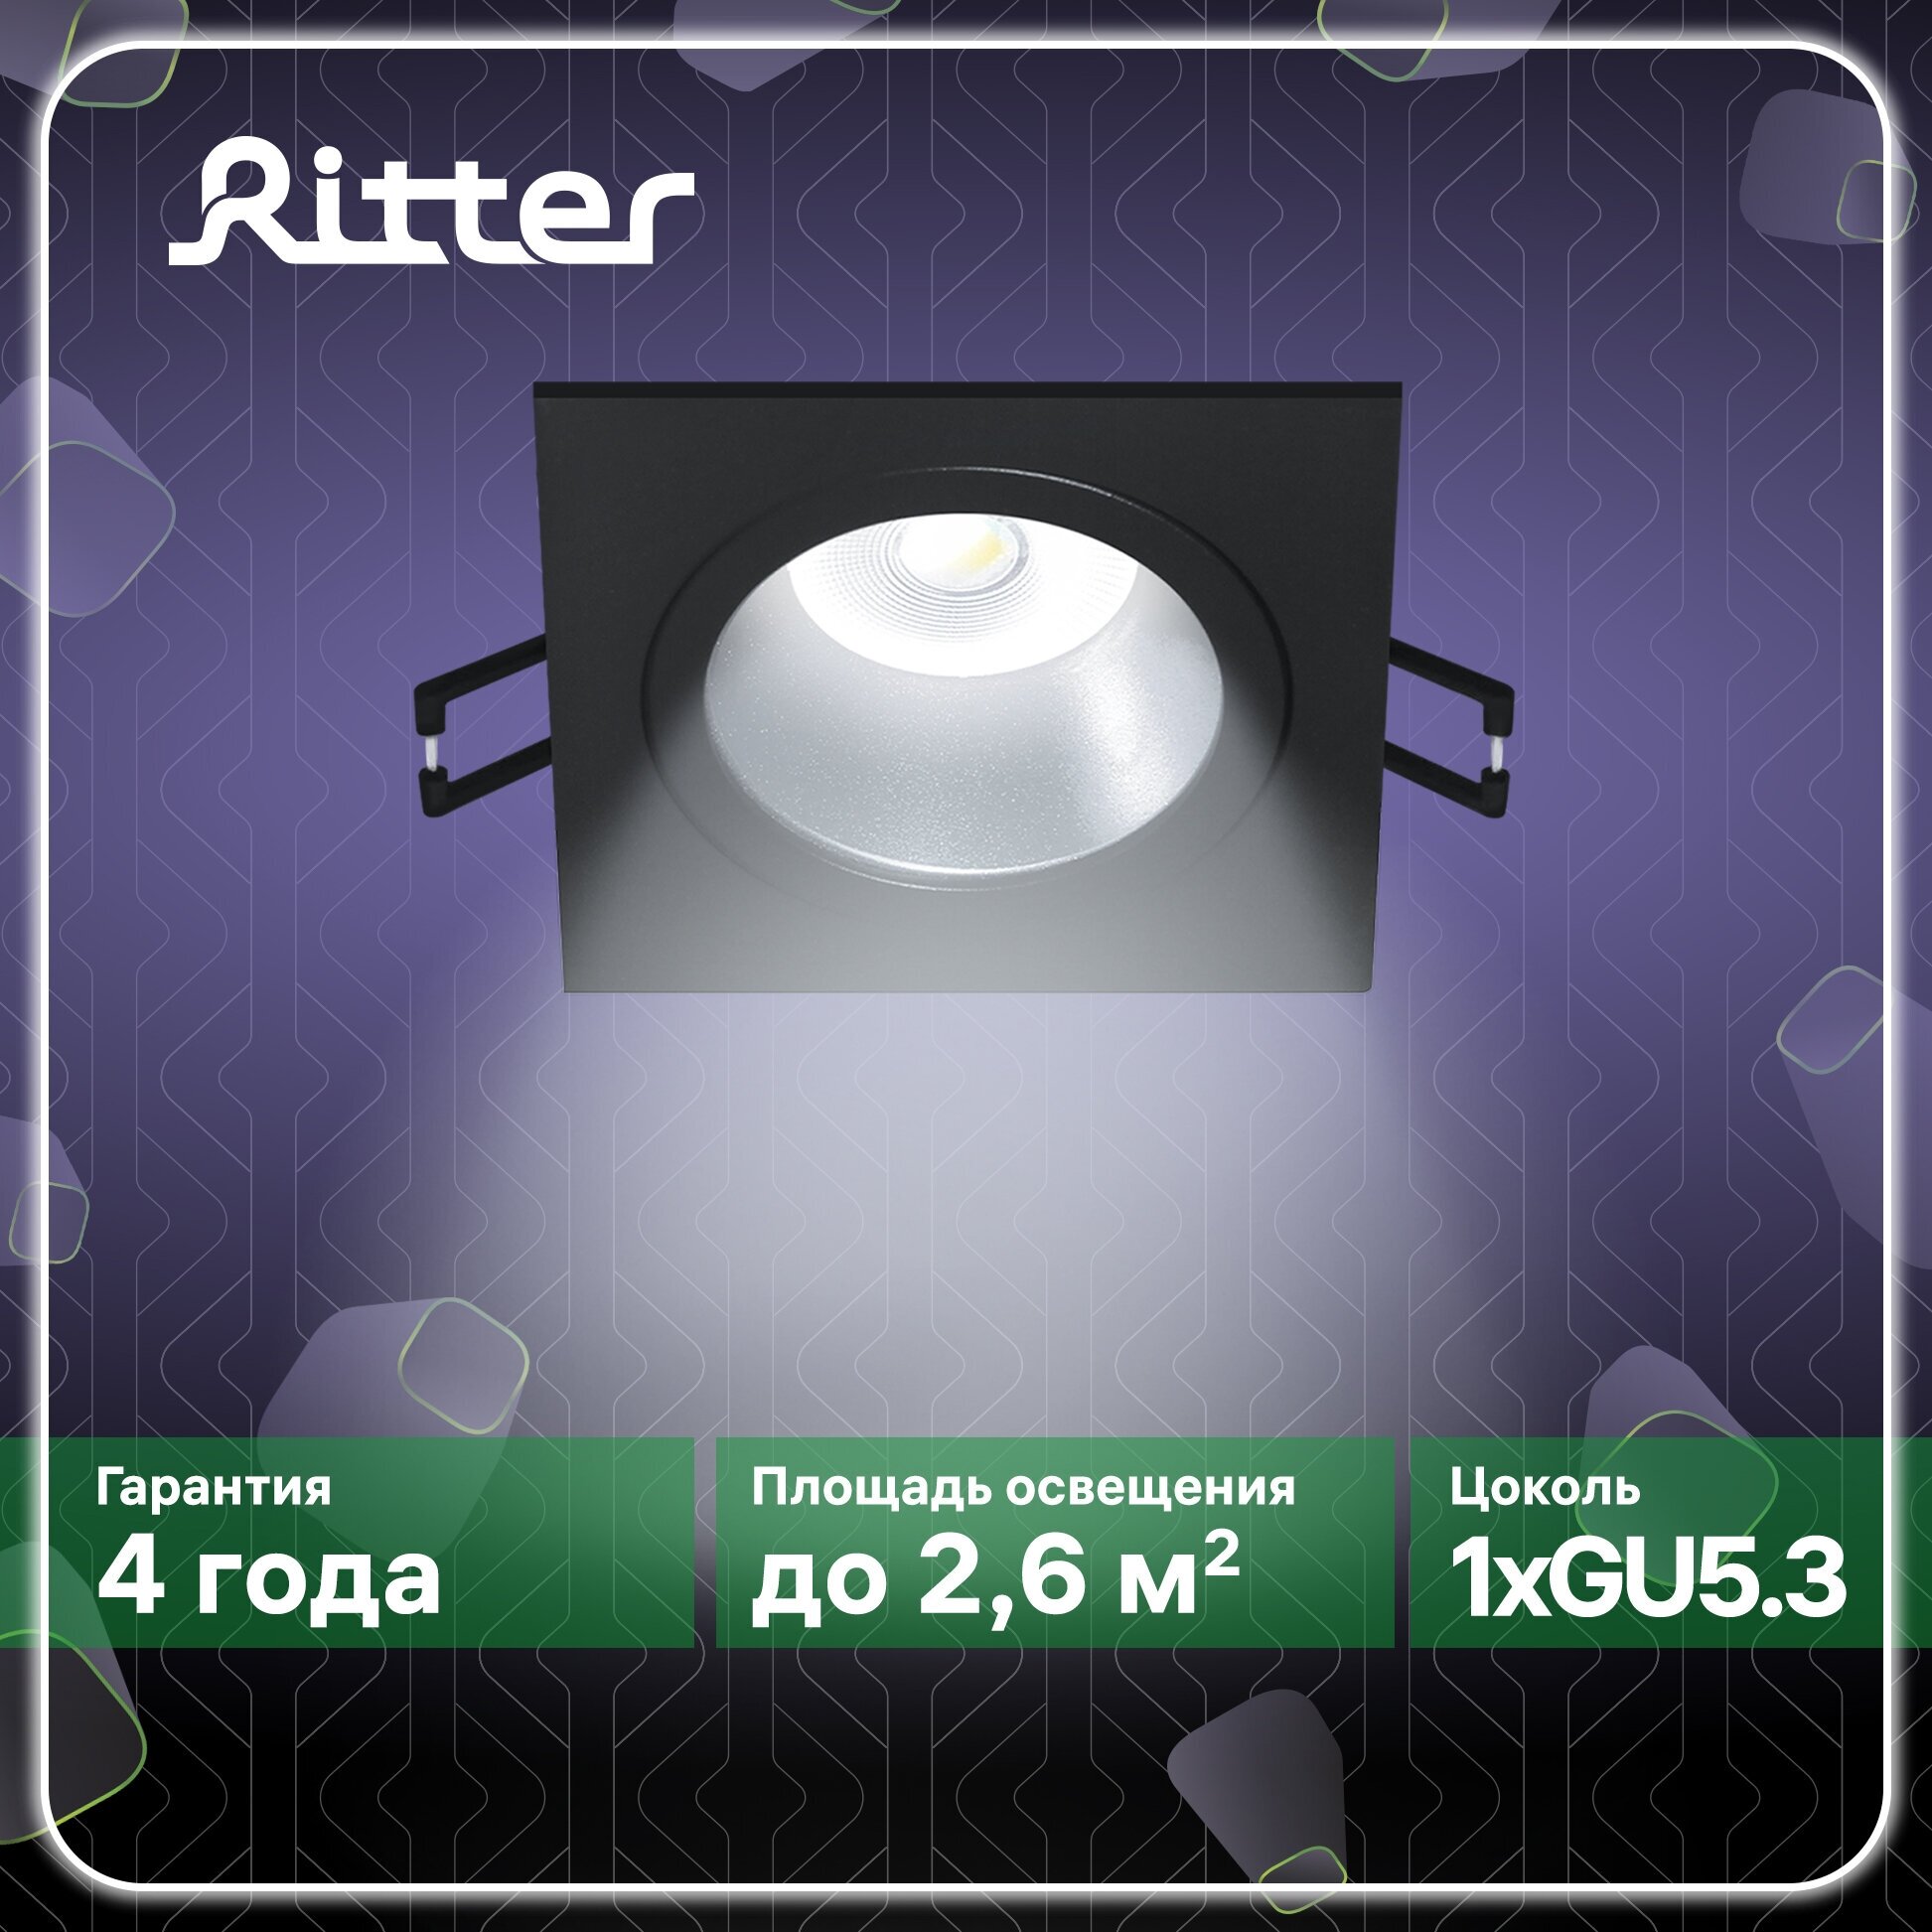 Светильник встраиваемый потолочный Artin скрытая лампа 93х93х35мм монтажное отверстие 80х80мм GU5.3 алюминий черный квадратный Ritter 51418 3